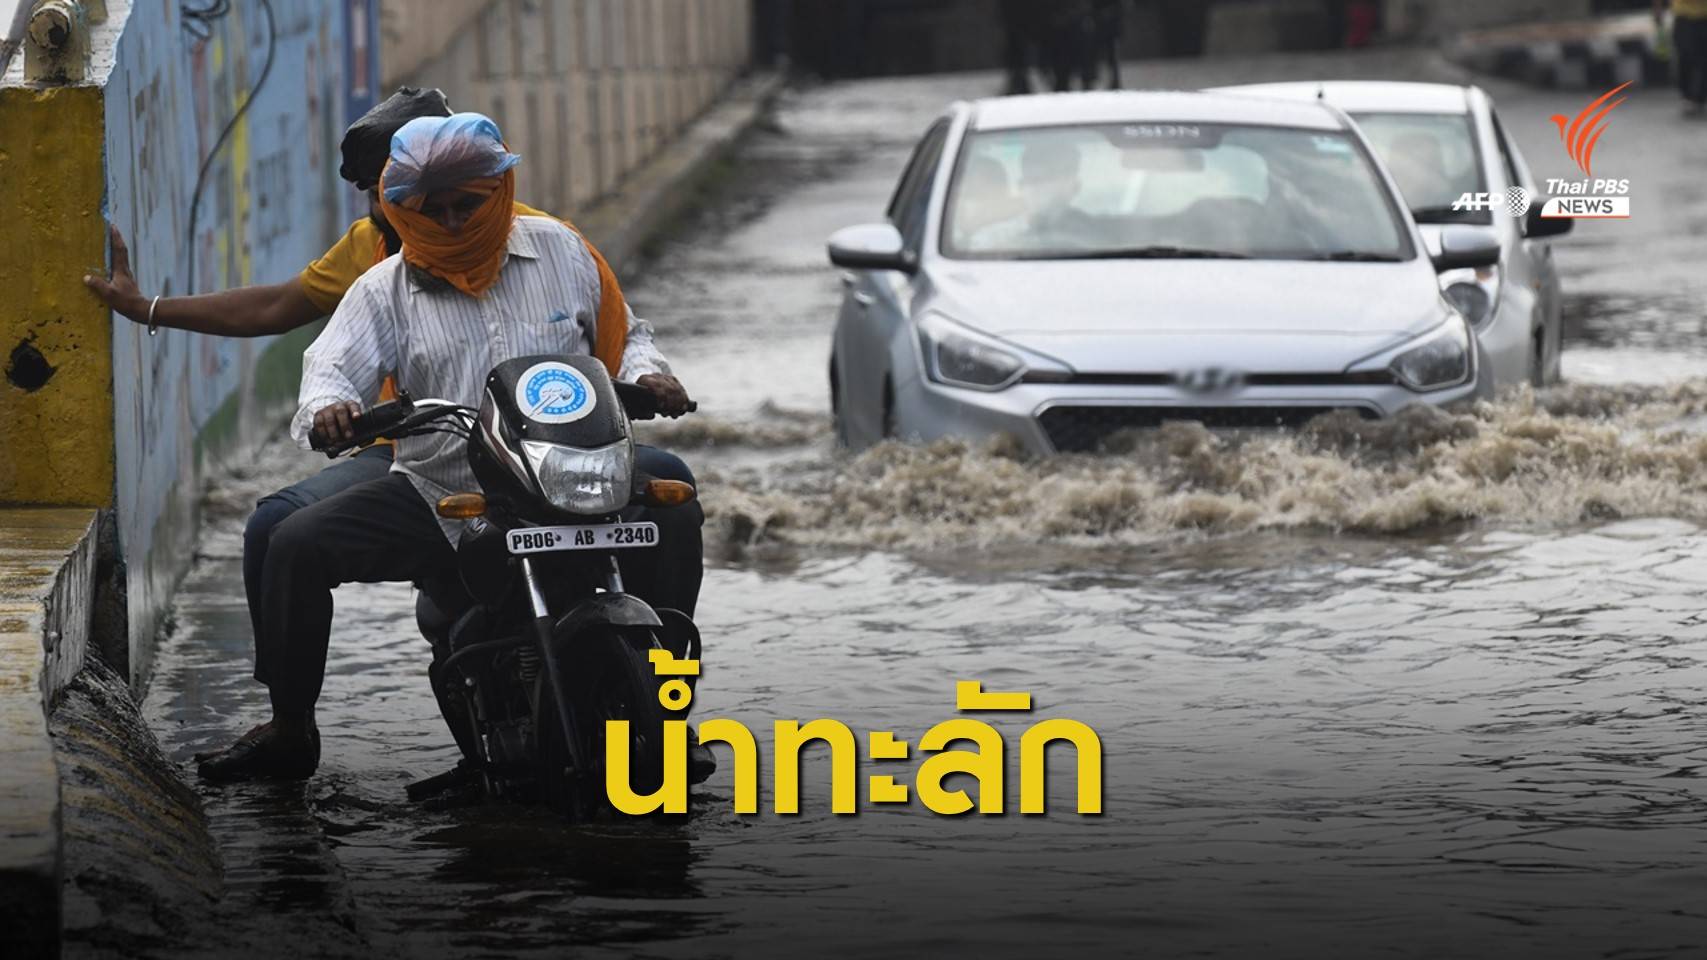 ฝนกระหน่ำ "อินเดีย-เนปาล" น้ำท่วมหนักกระทบ 4 ล้านคนไร้ที่อยู่